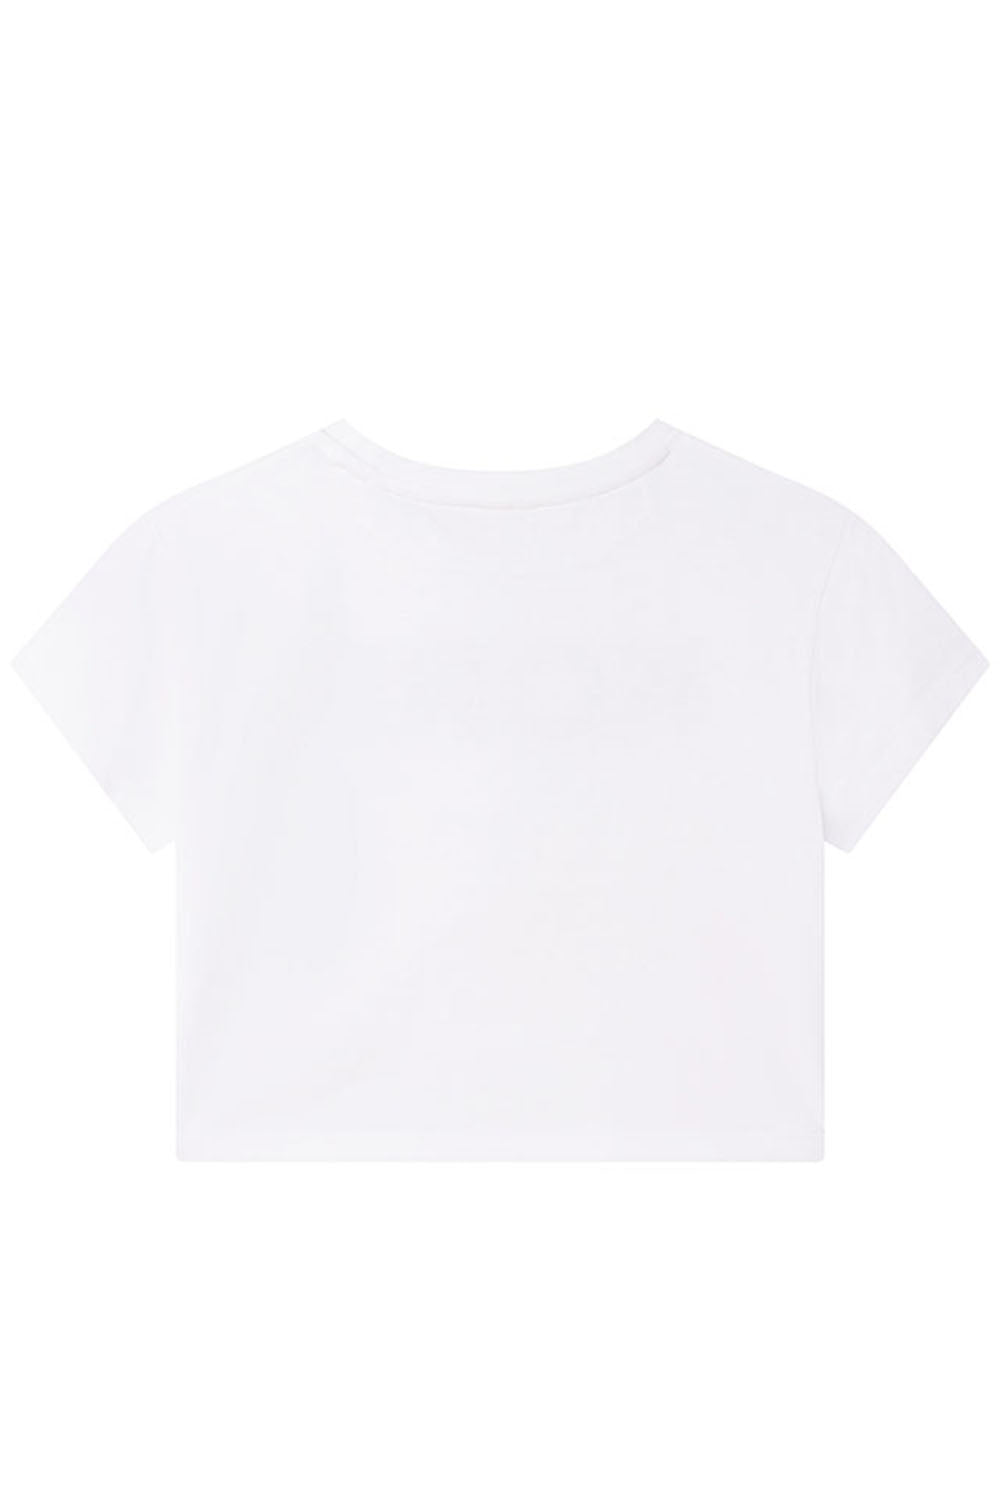 Mk Logo T Shirt for Girls - Maison7